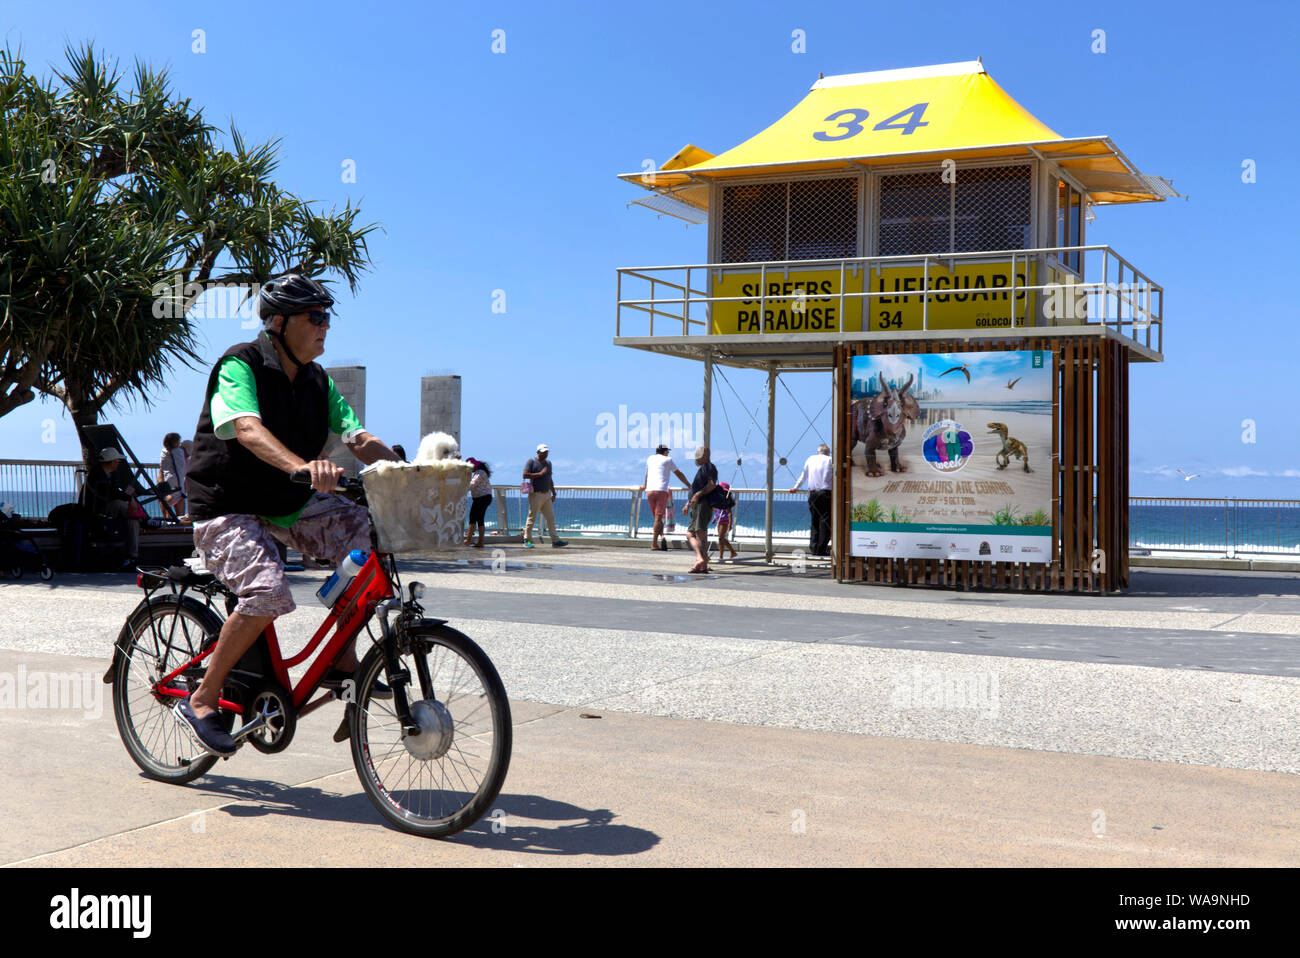 Mann mit Helm reiten ein Fahrrad mit Hund im Korb Gold Coast, Queensland, Australien Stockfoto